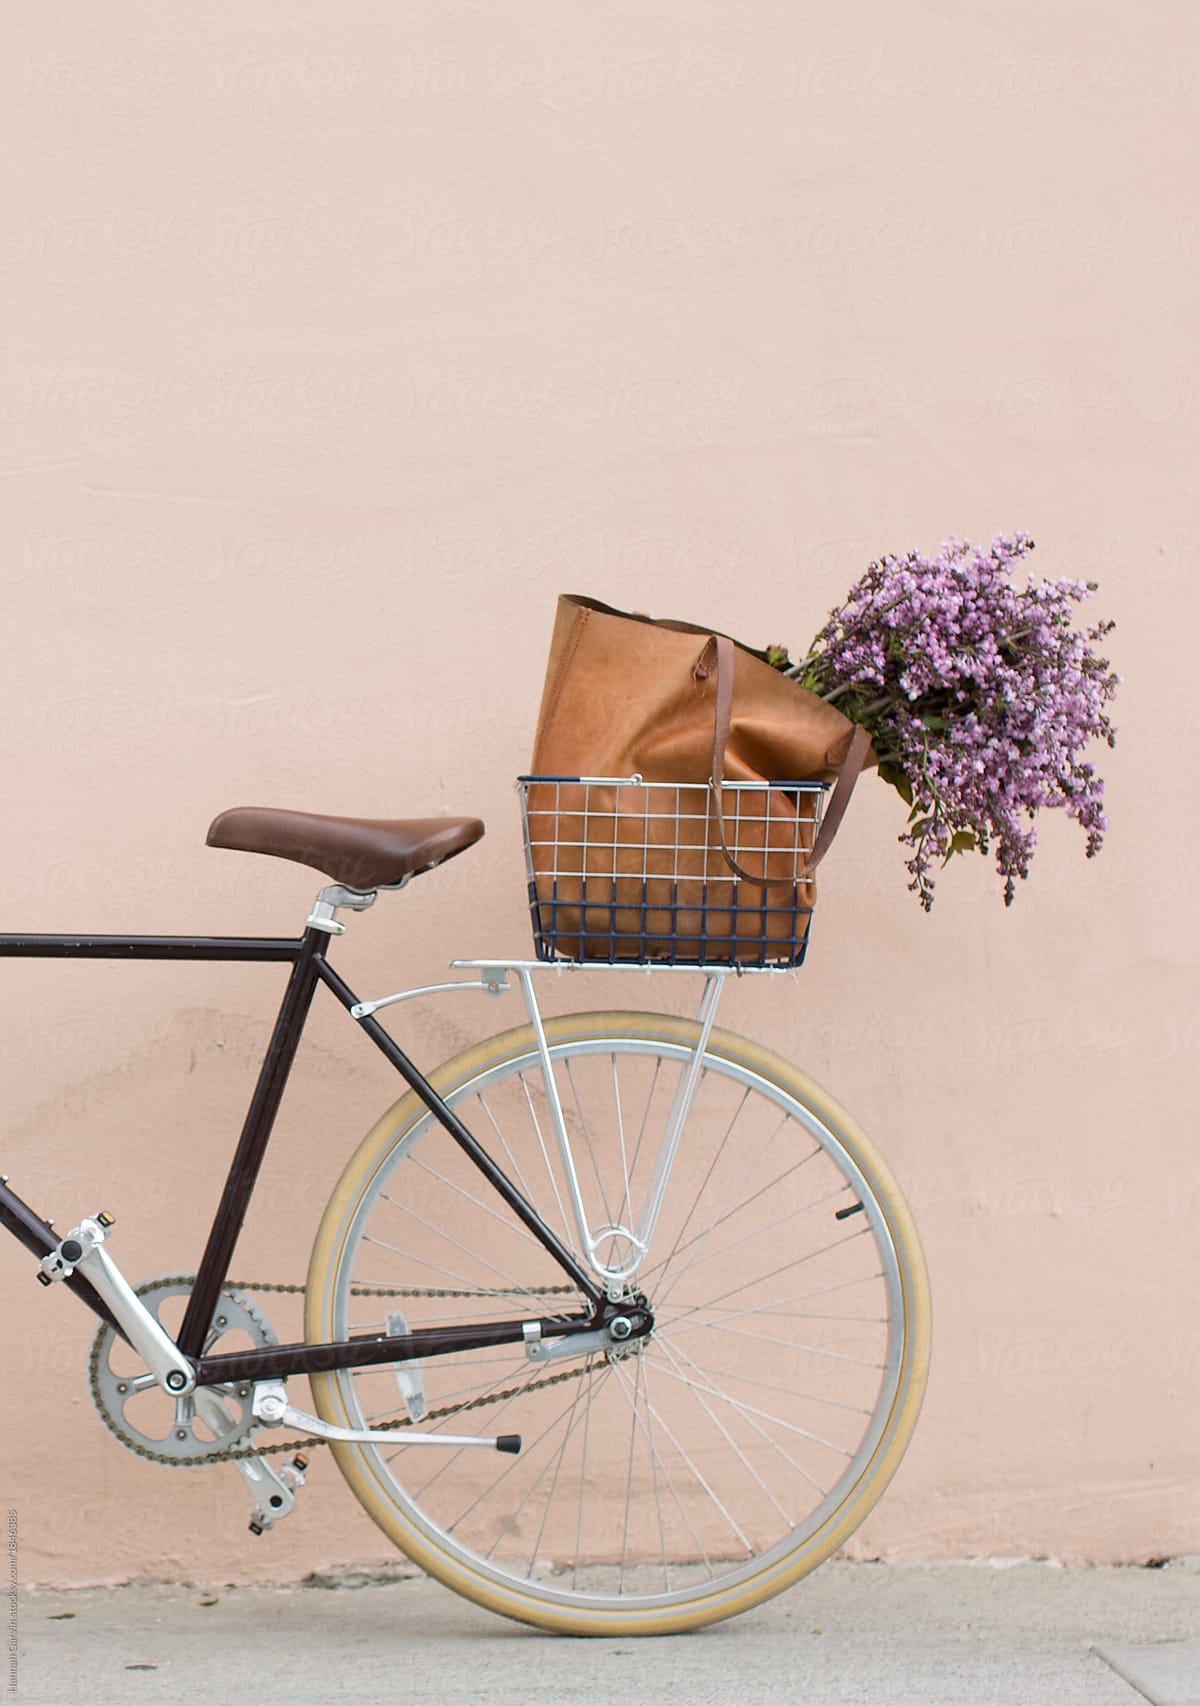 Bike Basket with Flowers